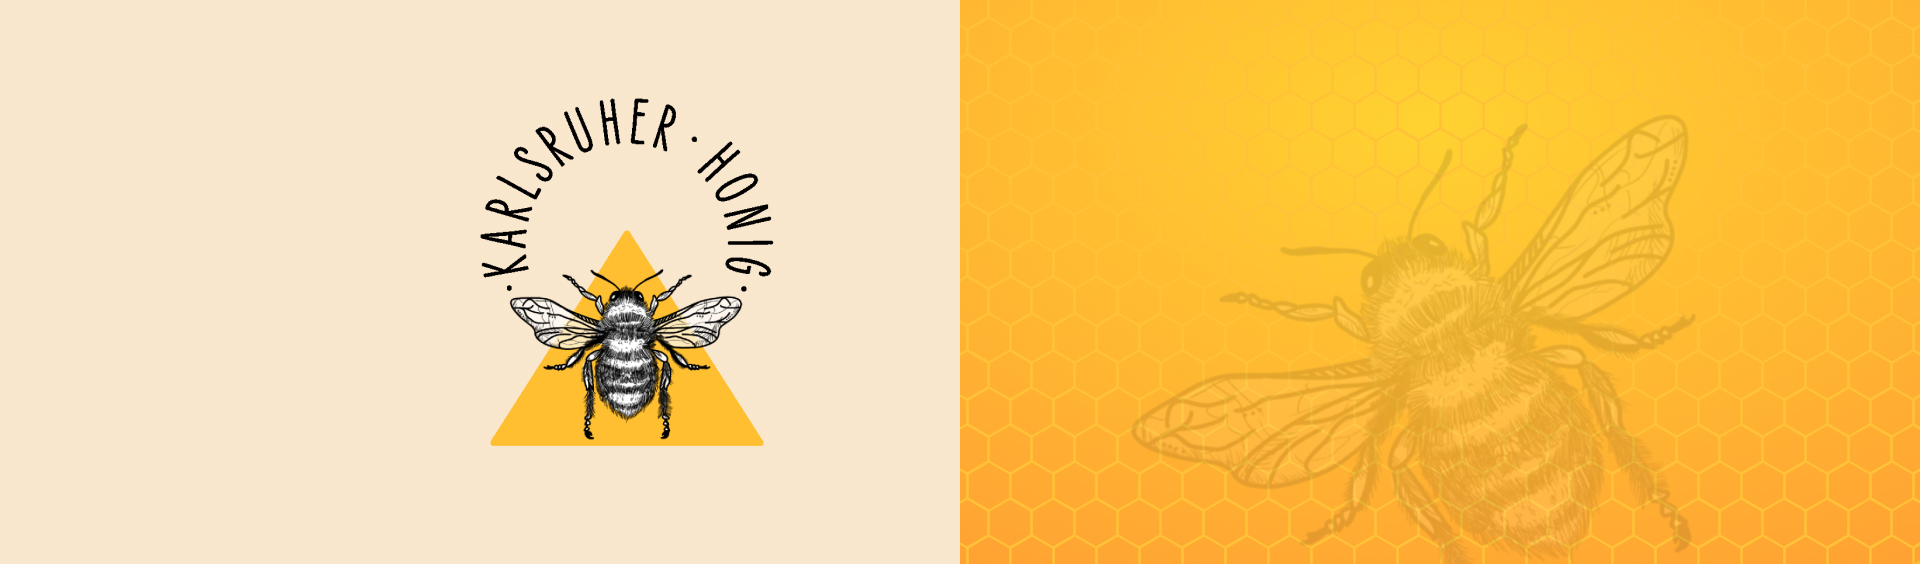 Erstellung eines Logos inklusive Illustration für Karlsruher Honig